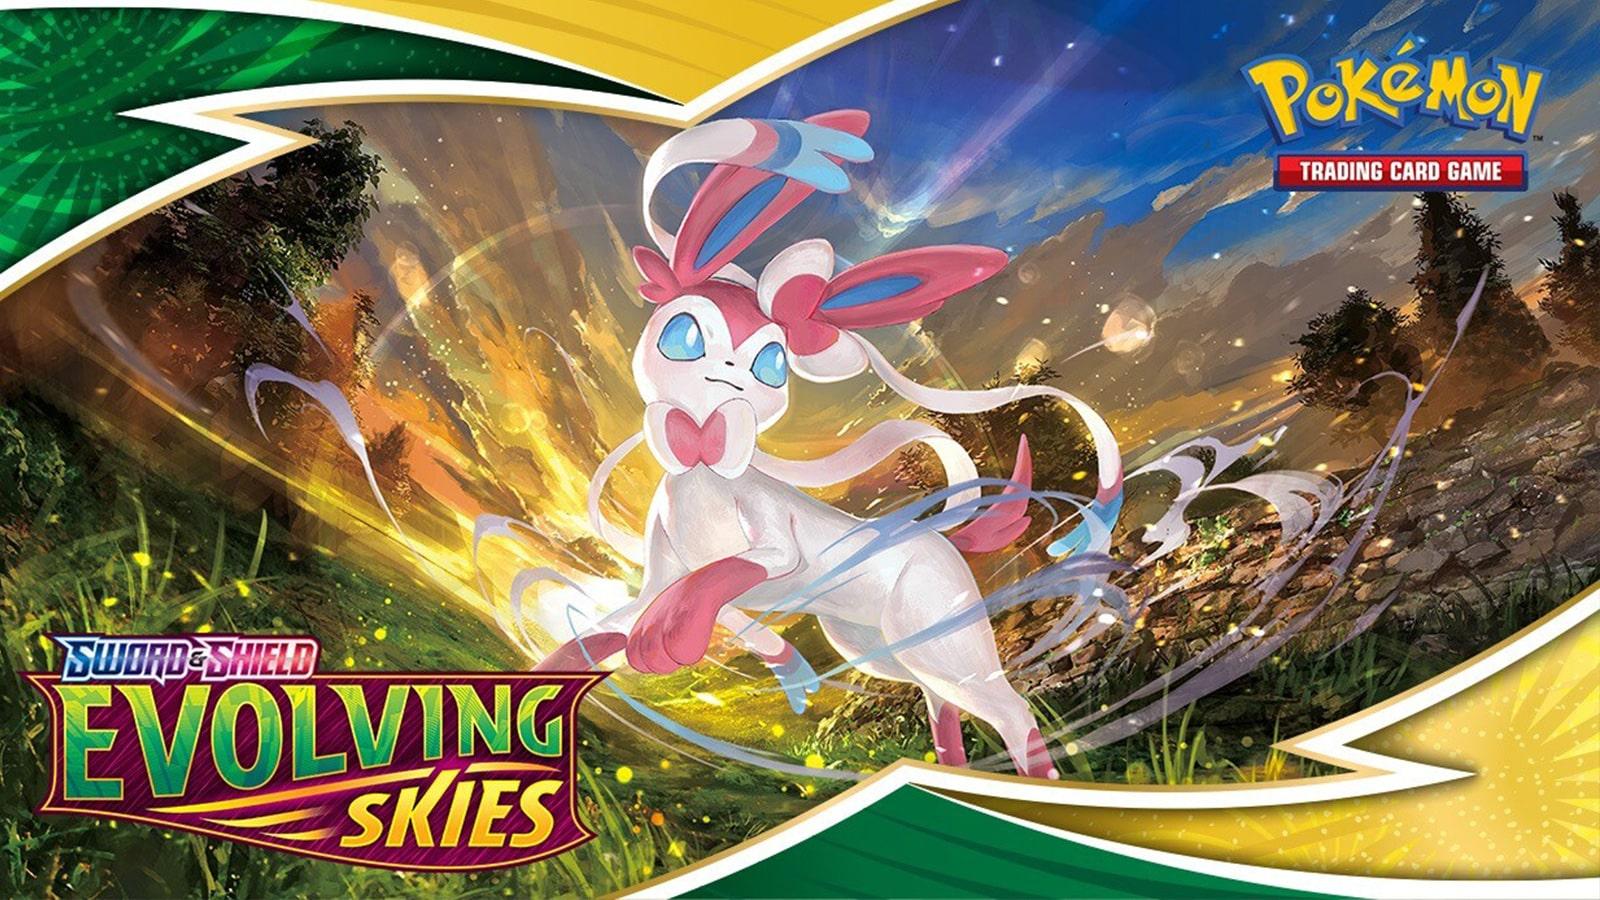 Pokemon TCG Evolving Skies promotional art